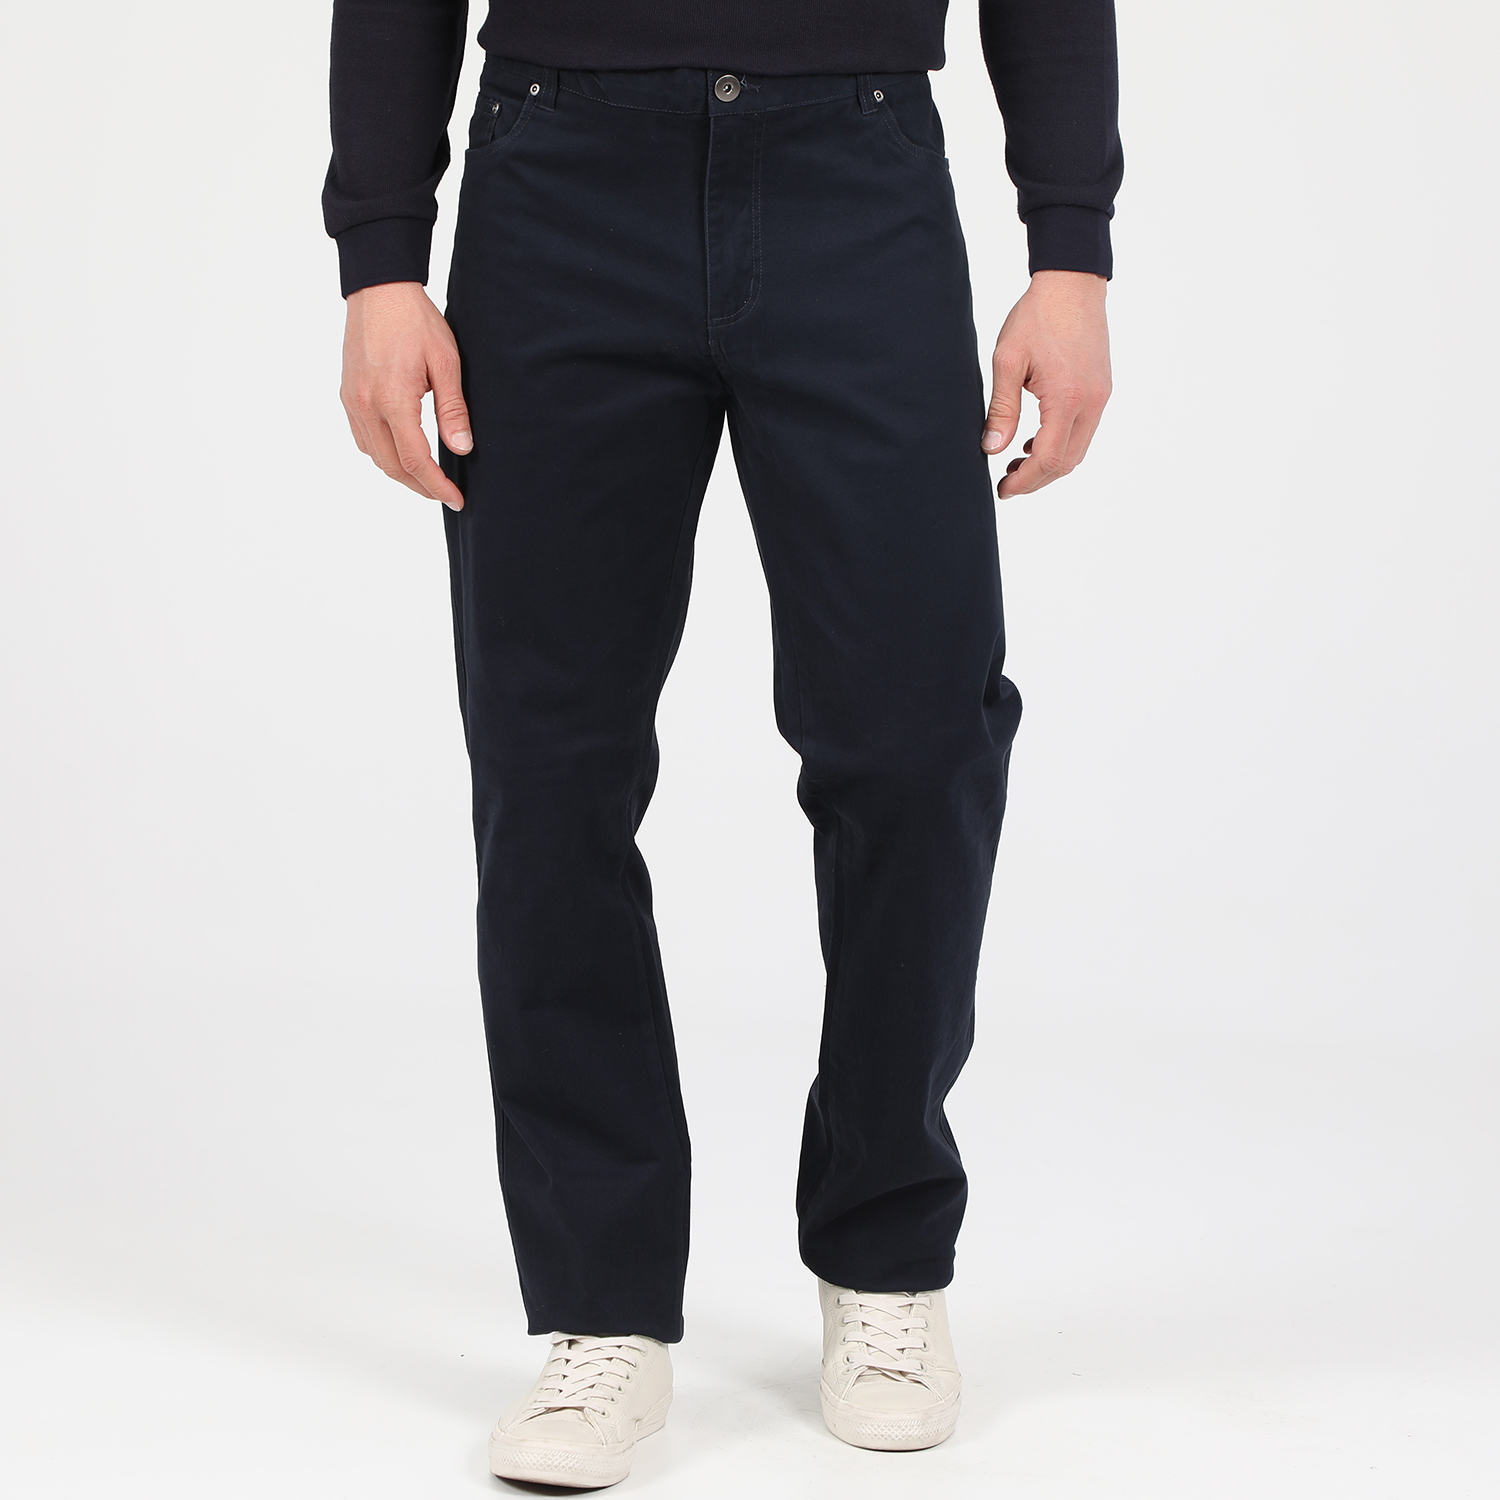 Ανδρικά/Ρούχα/Παντελόνια/Ισια Γραμμή MARTIN & CO - Ανδρικό παντελόνι MARTIN & CO 5-POCKET μπλε